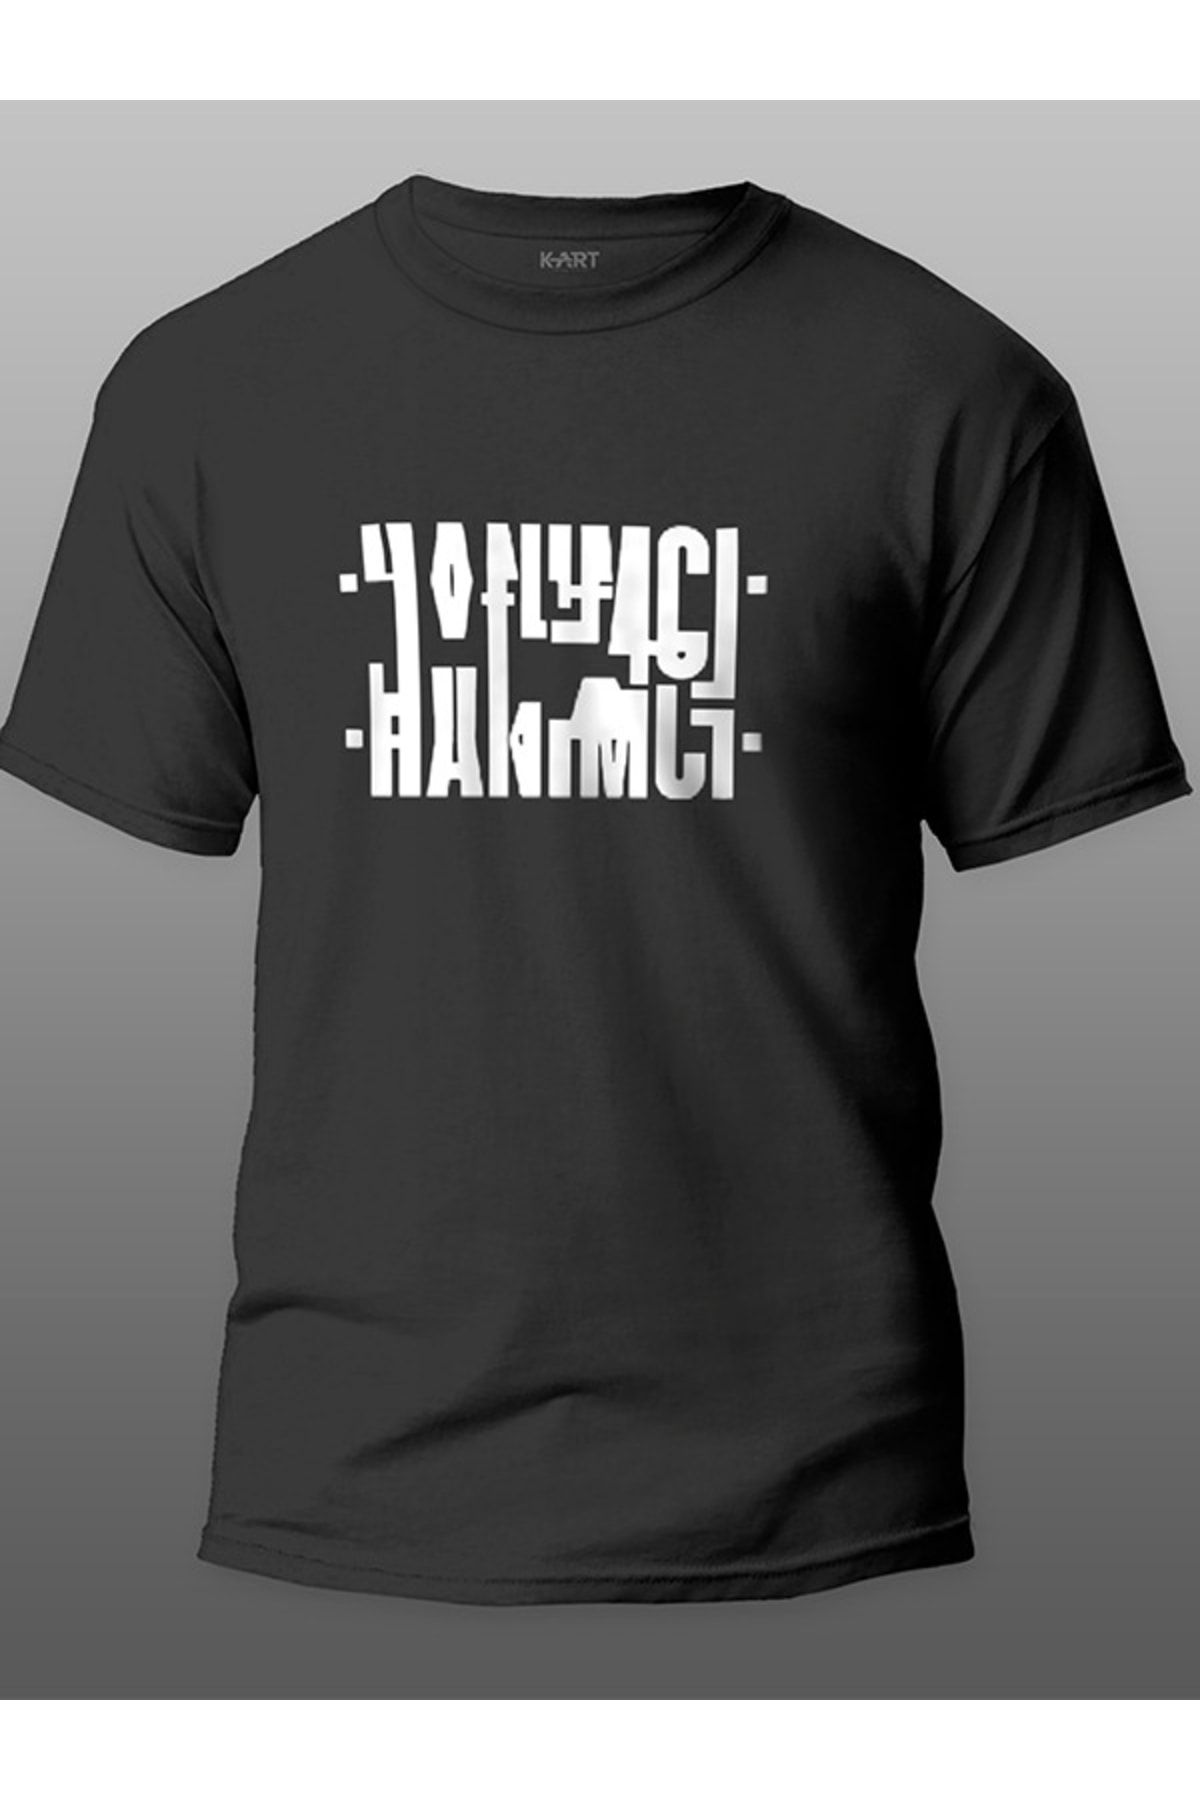 Tişört Baskı K-art Hanımcı Sübliminal Tasarımlı Organik Unisex Siyah Kişiye Özel Baskılı Tişört